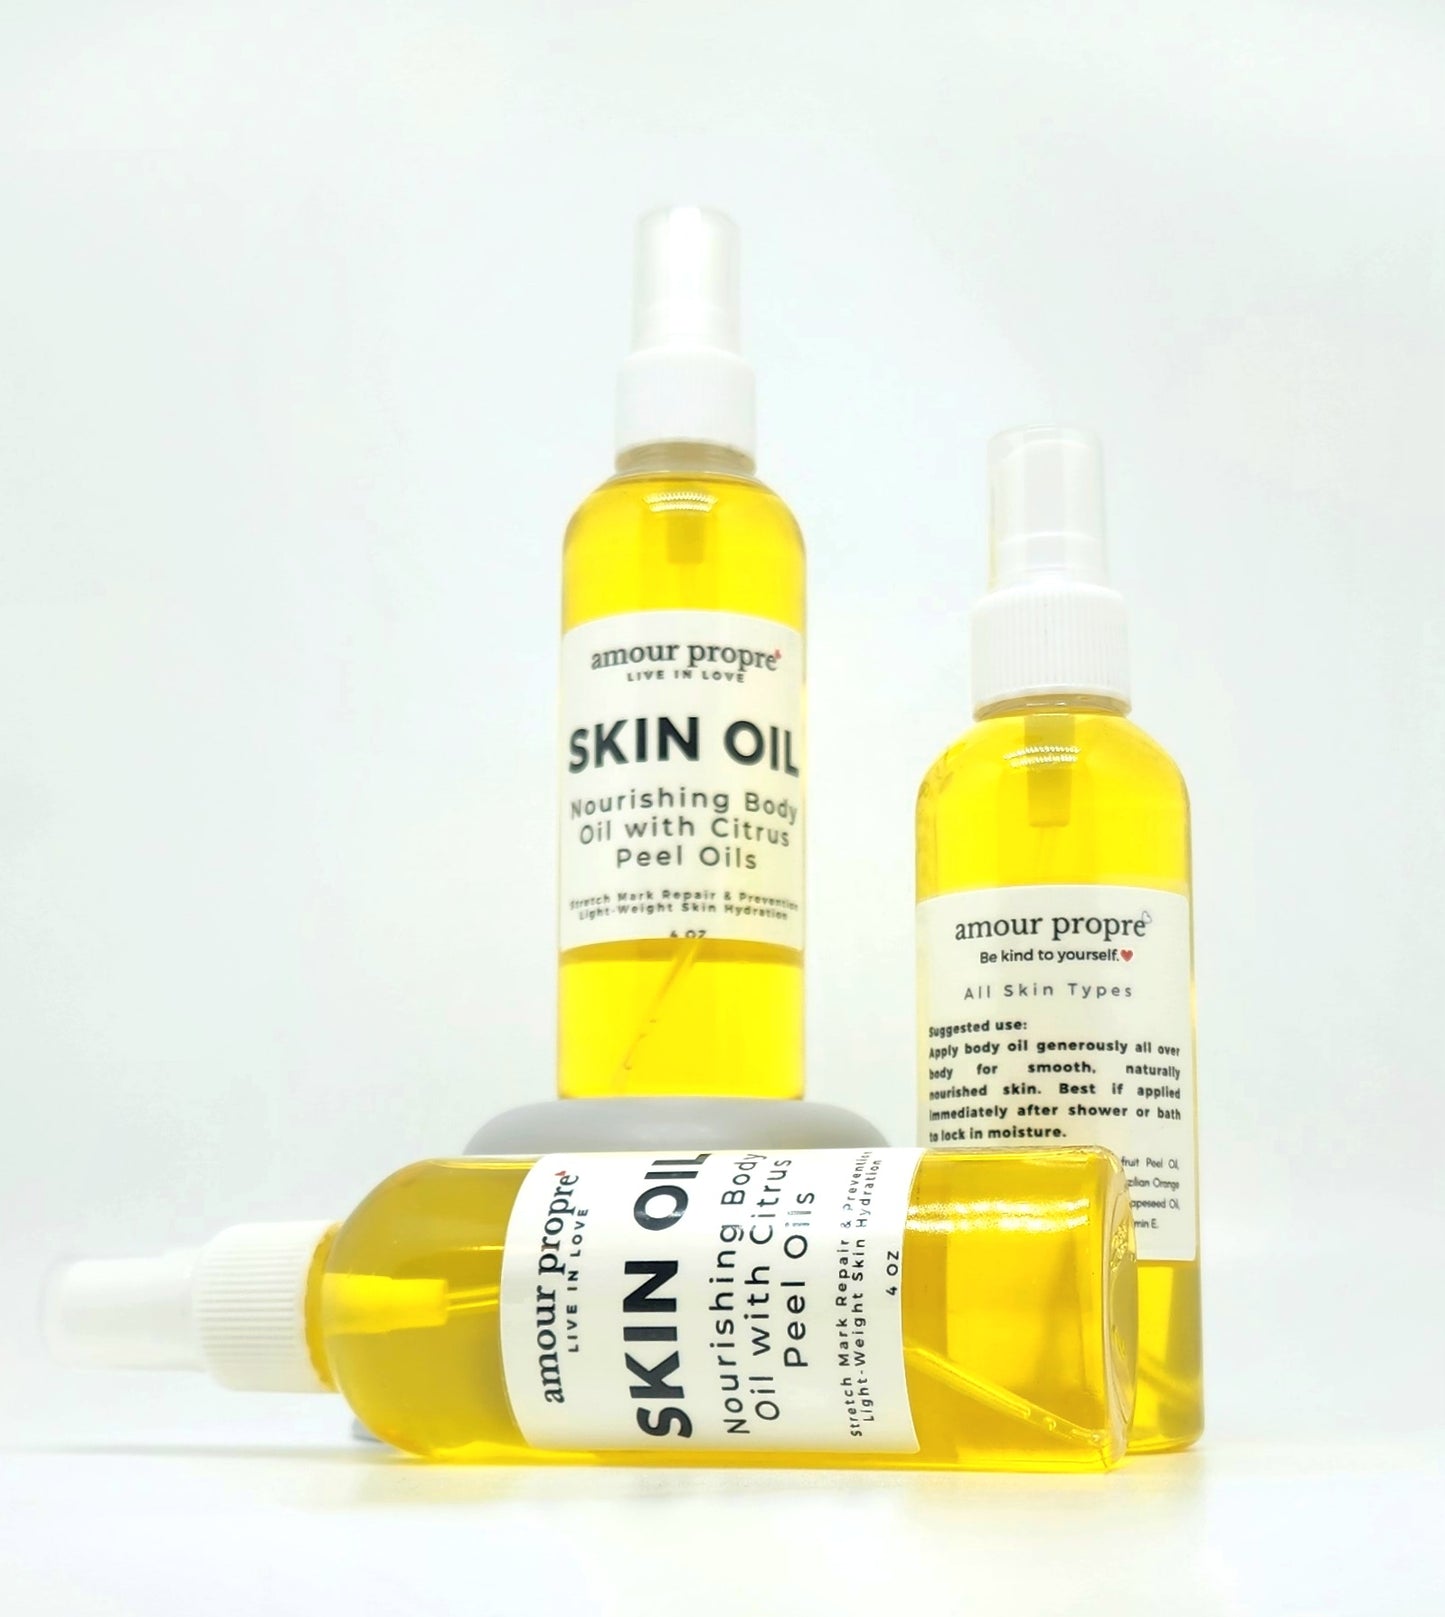 Organic Skin Oil